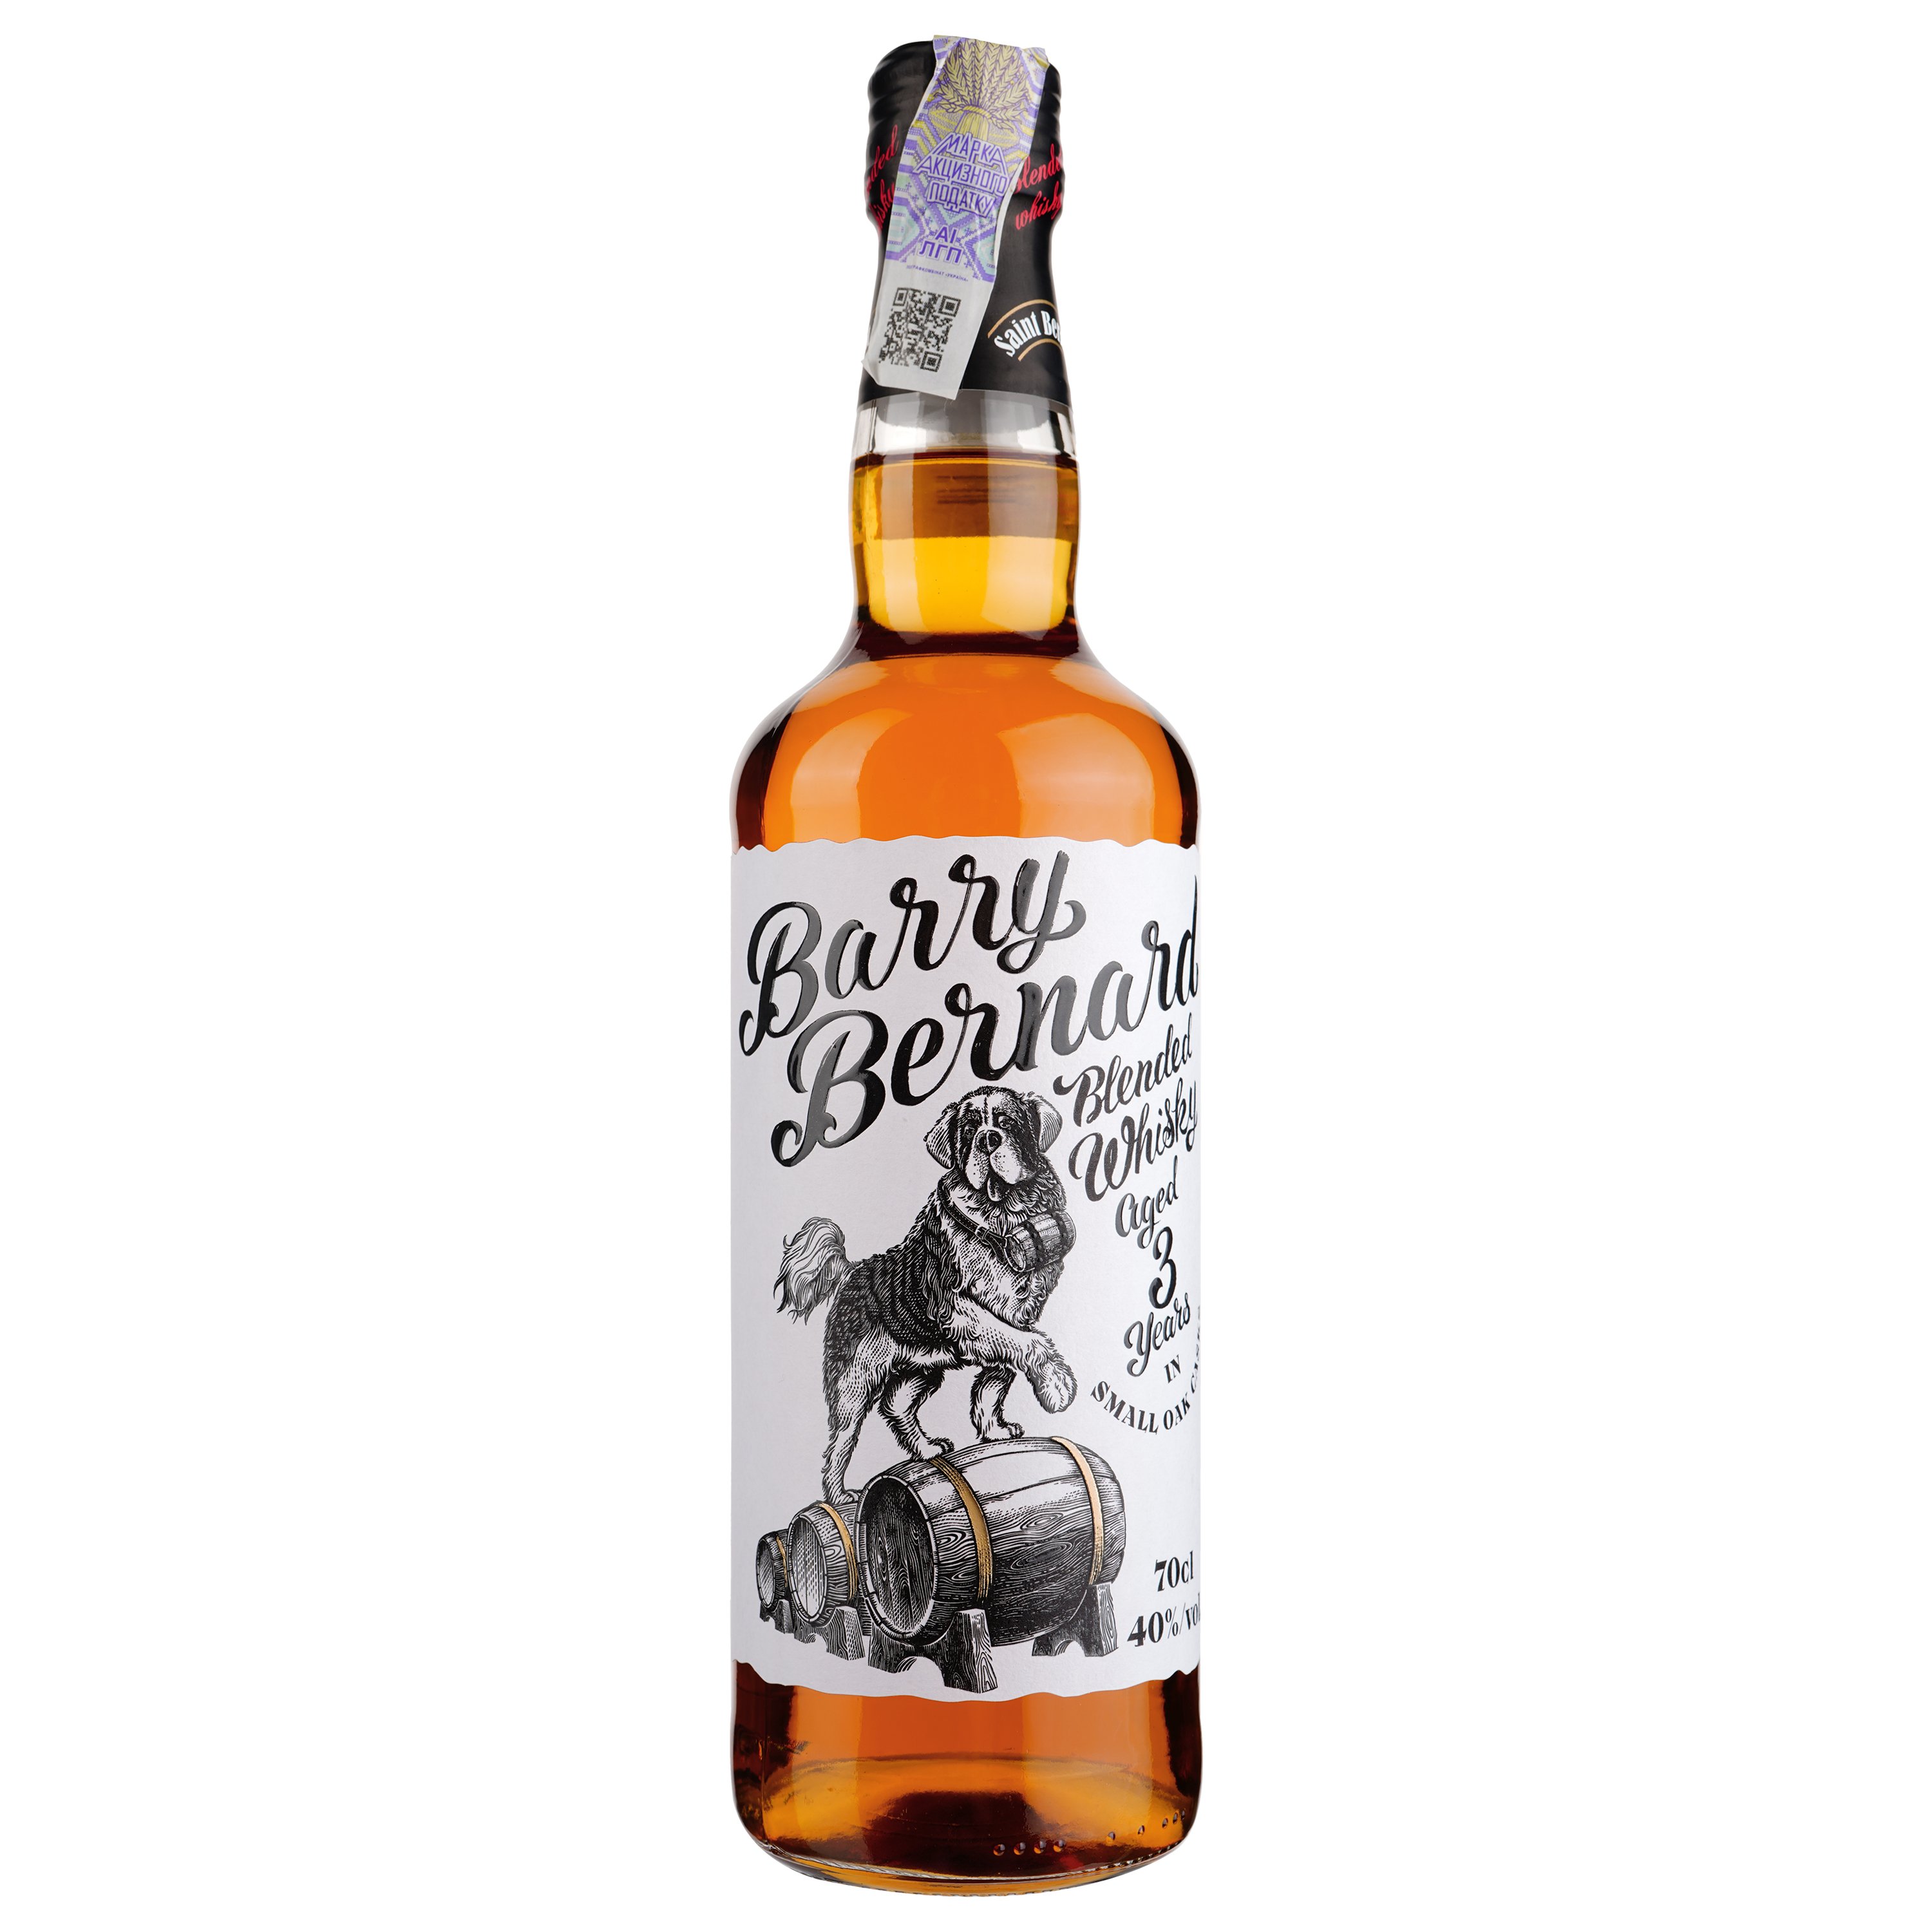 Віскі Barry Bernard 3yo Blended Whisky 40% 0.7 л - фото 1